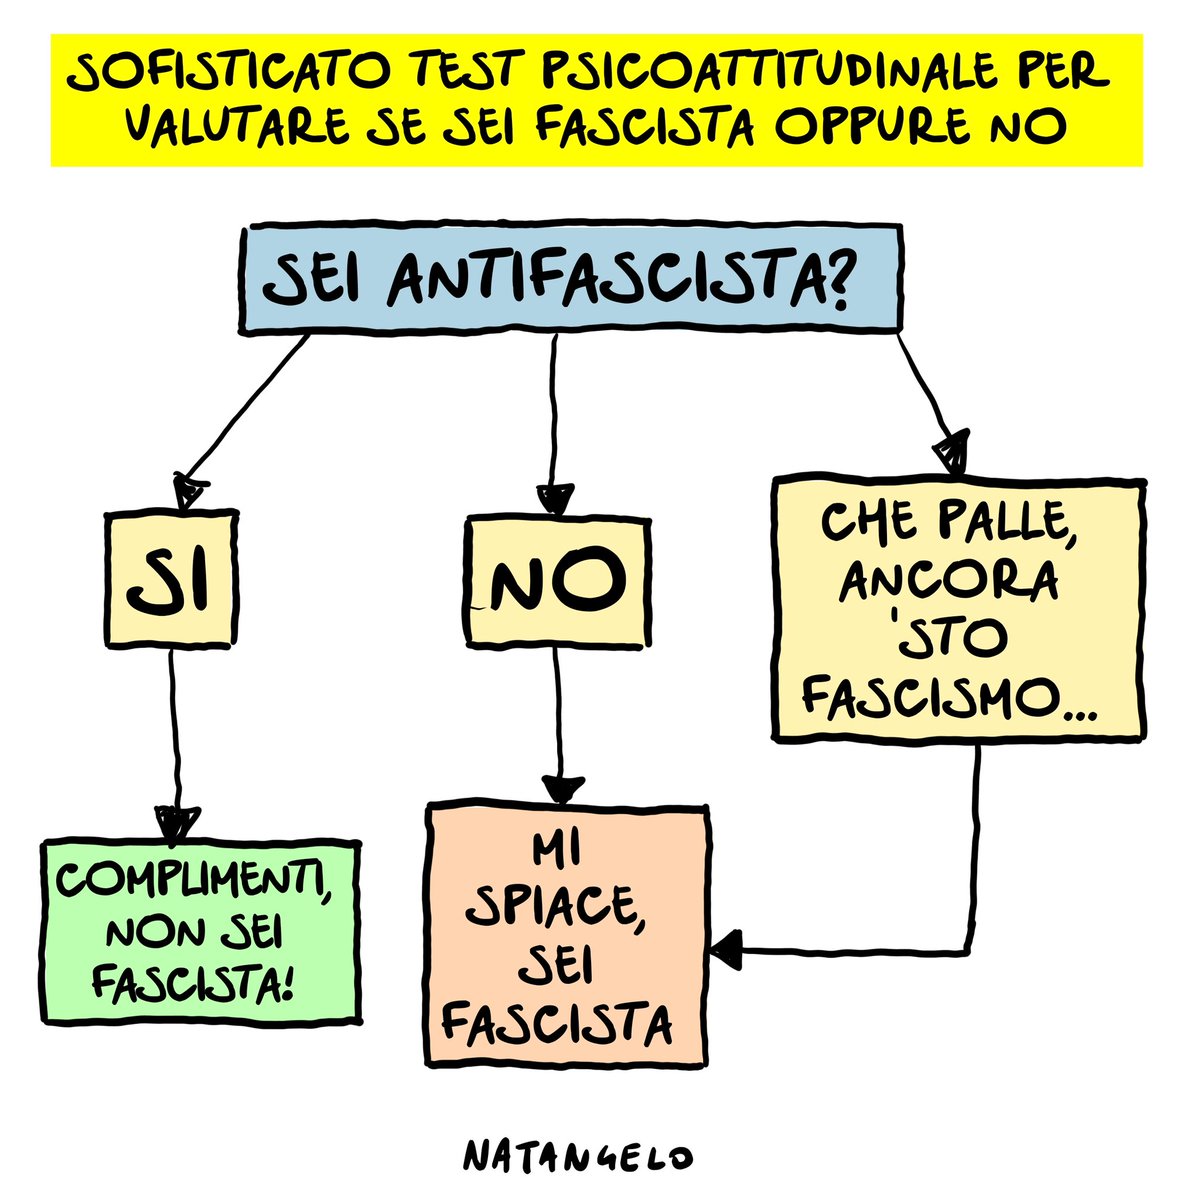 Il test del 25 aprile: è un po' elaborato ma sto cercando di snellirlo

#antifascismo #fascismo #liberazione #resistenza  #25aprile #vignetta #fumetto #memeitaliani #umorismo #satira #humor #natangelo